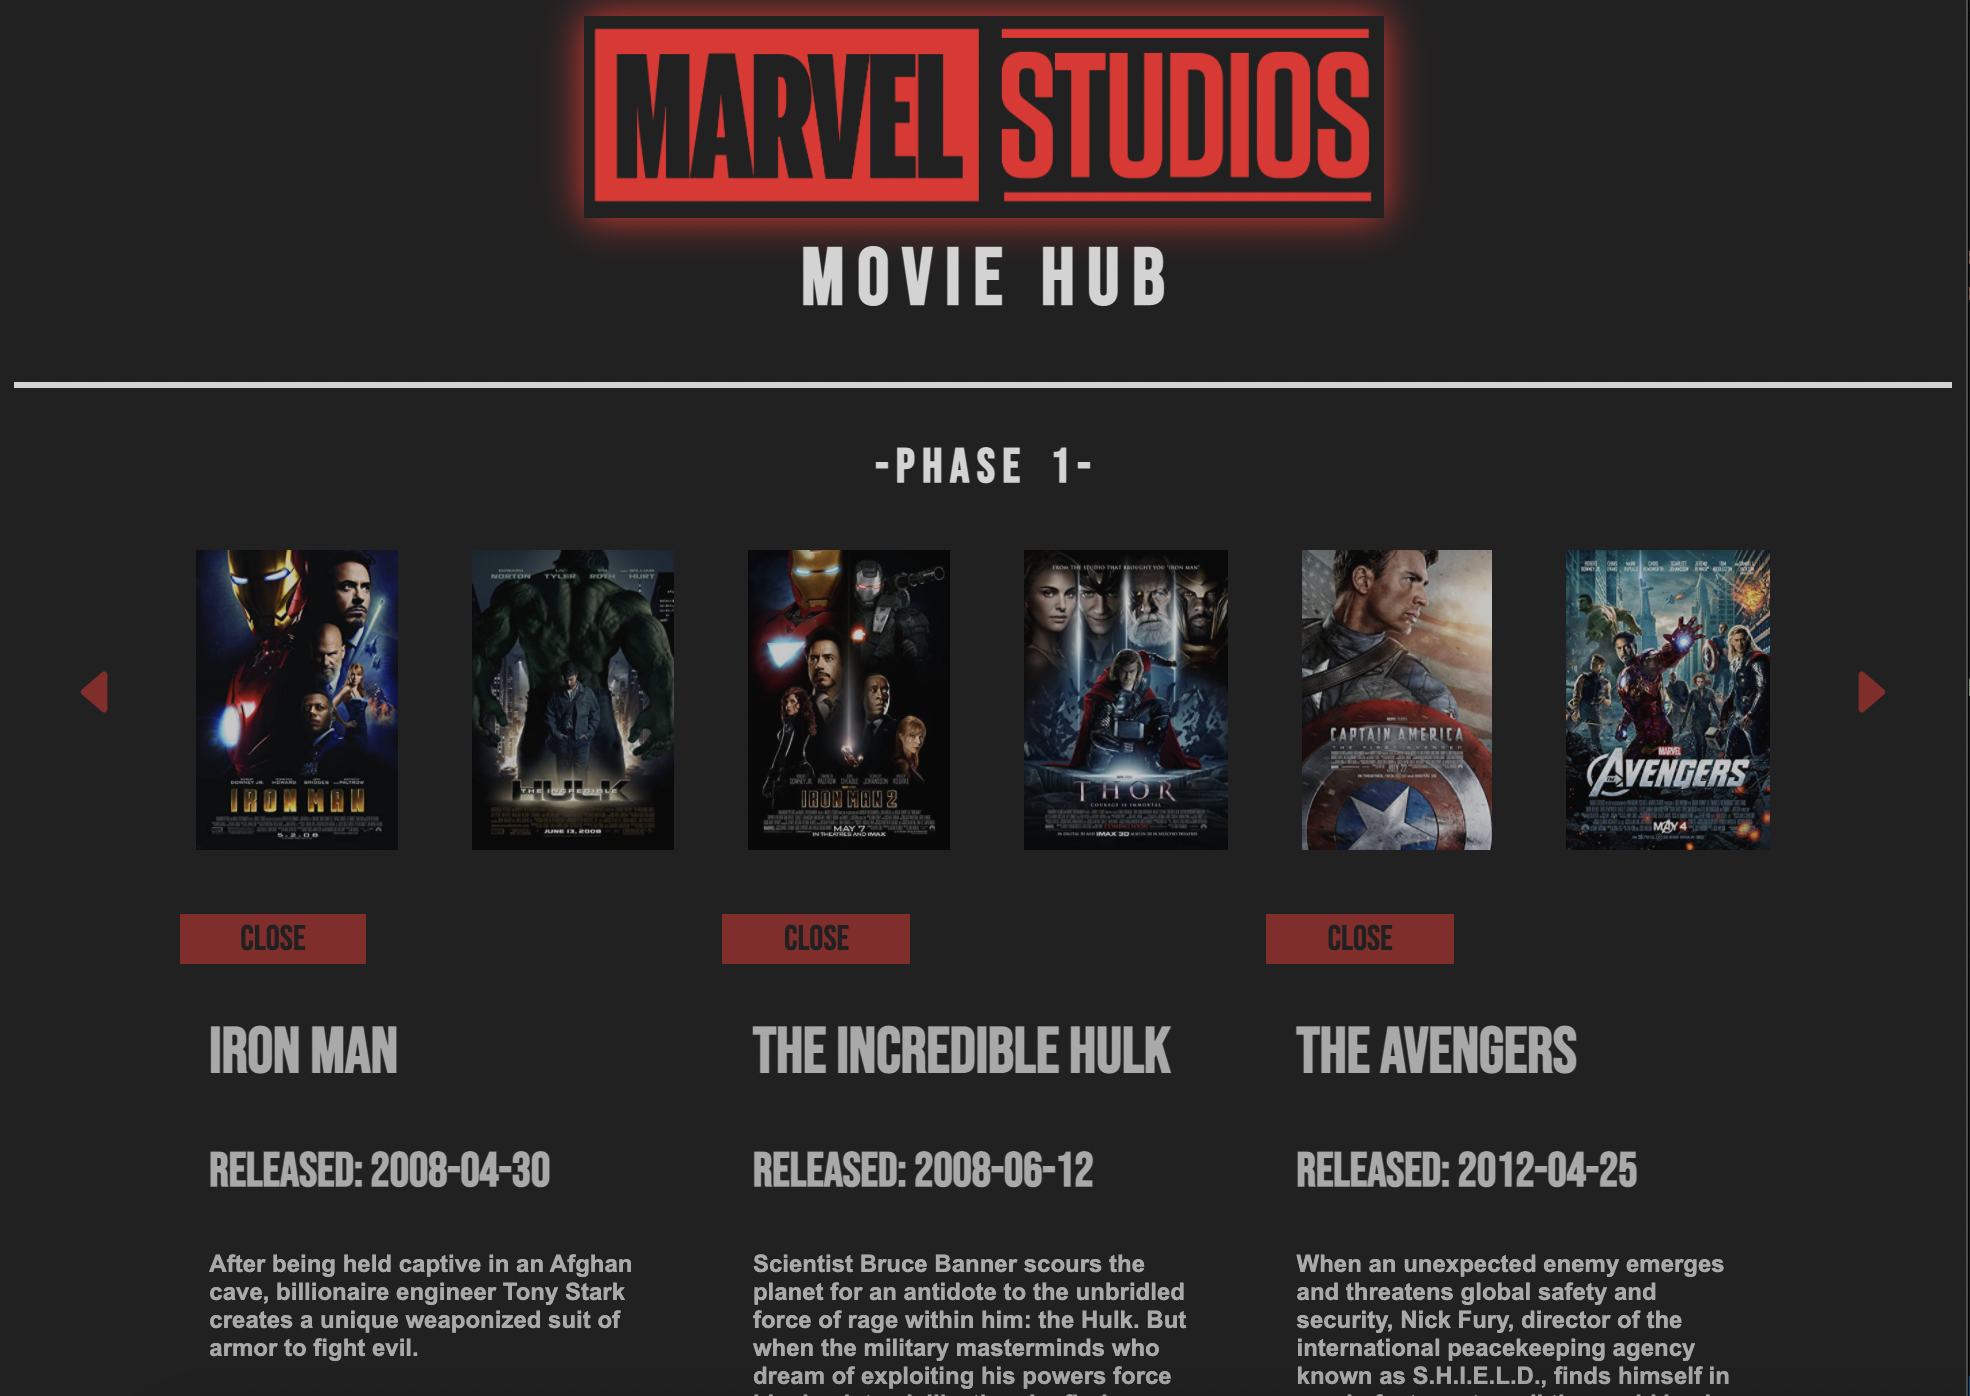 Marvel Studios Movie Hub